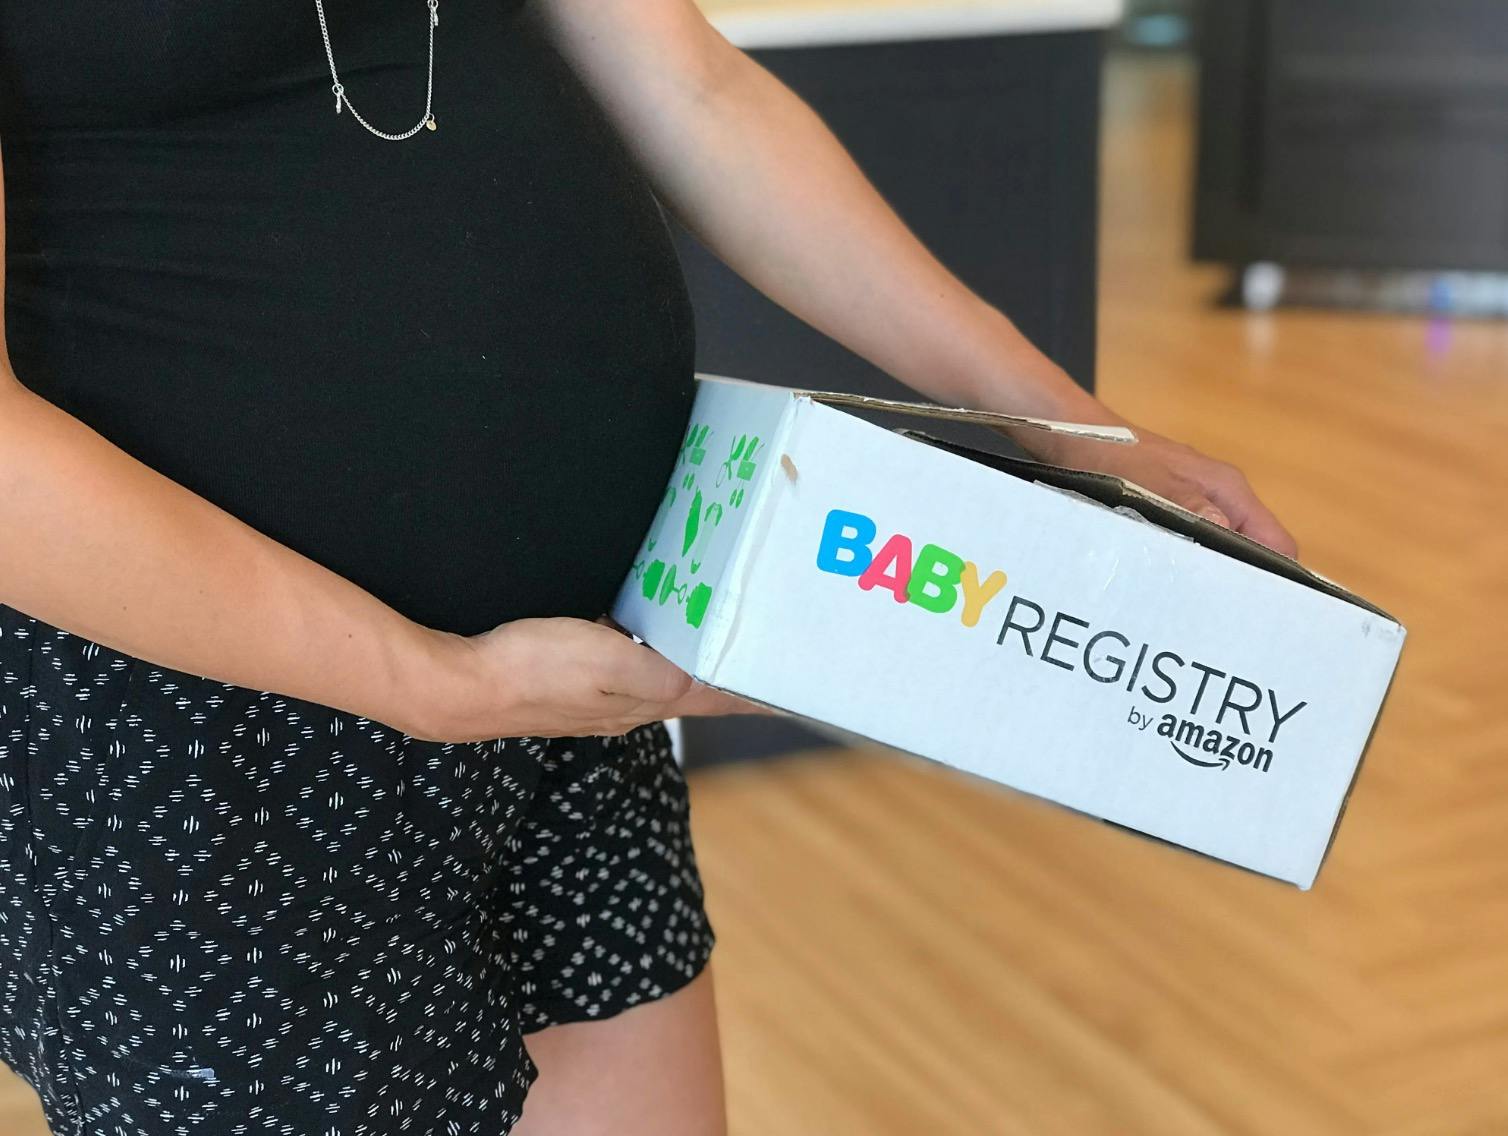 kmart baby registry